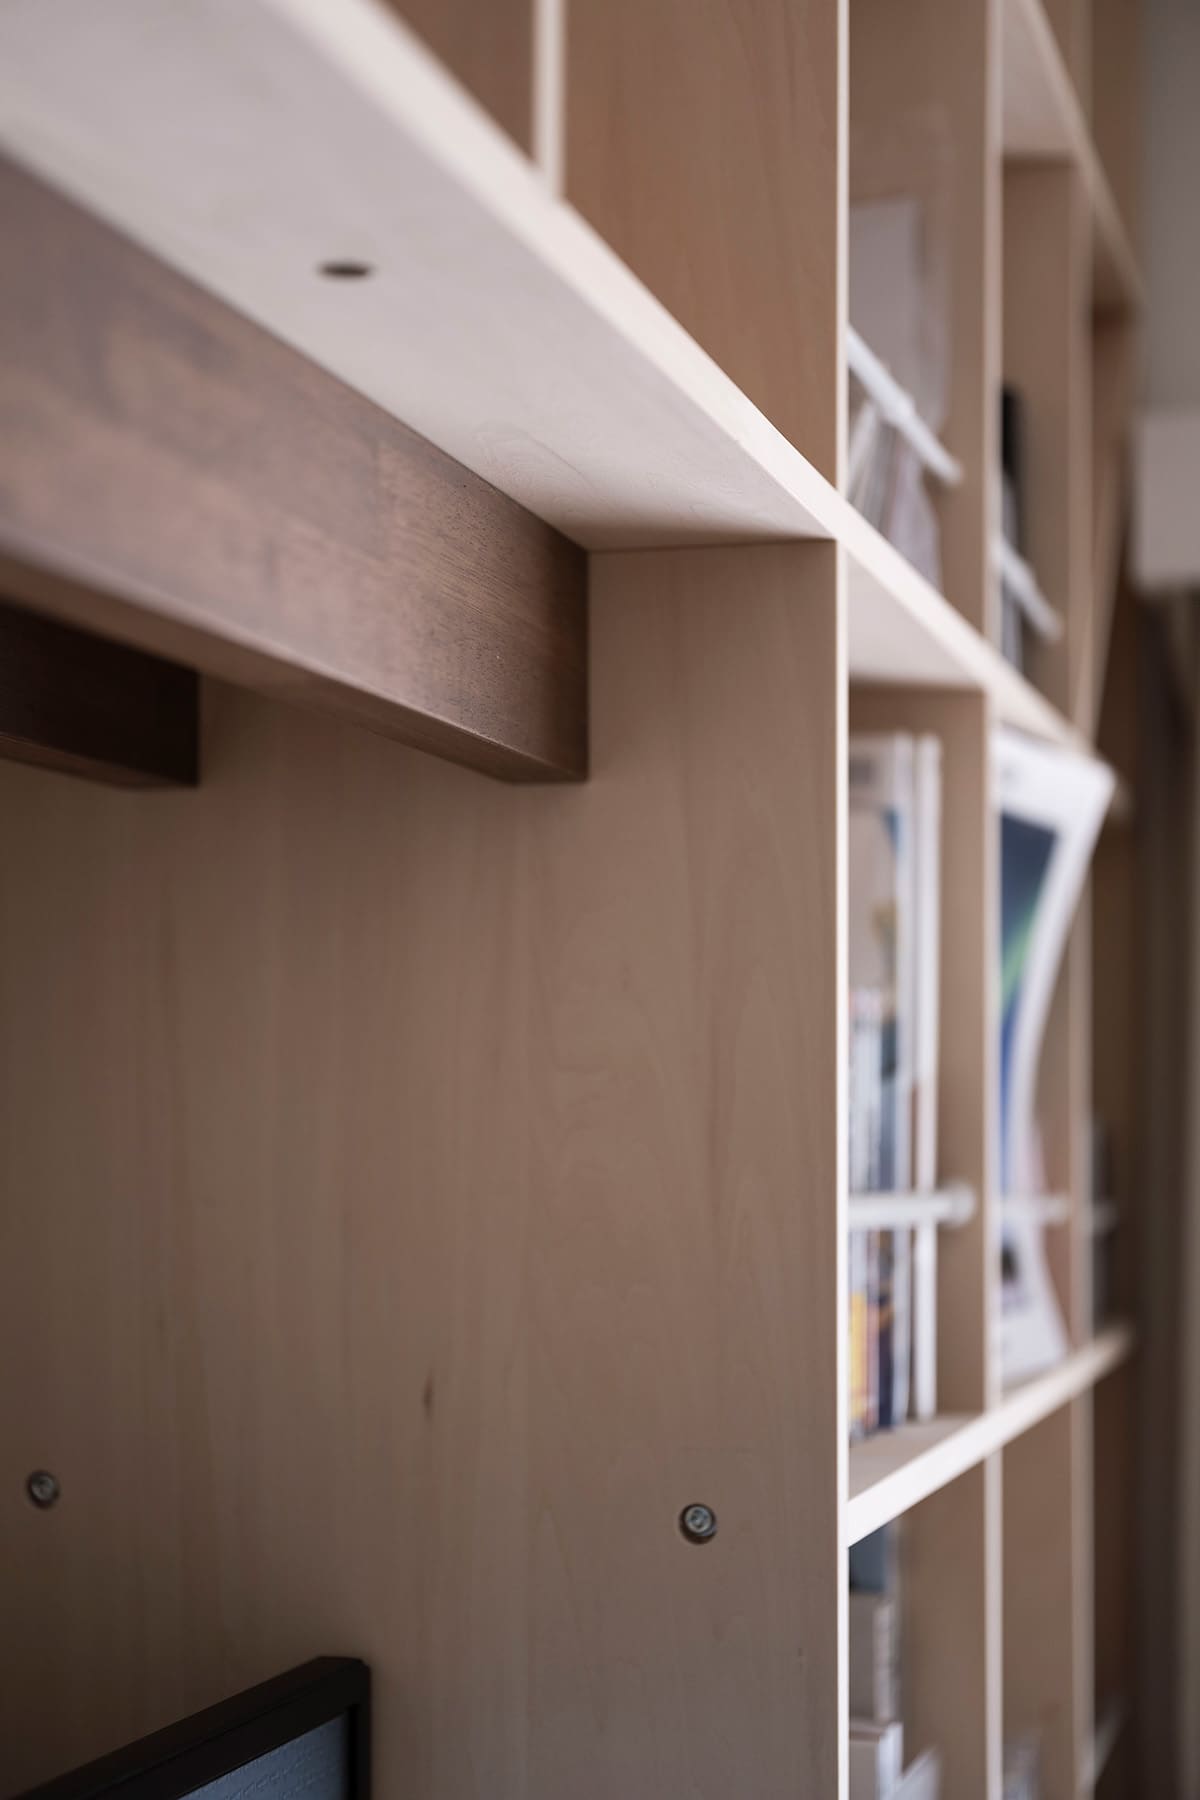 【File 801】2台の本棚を連結する - Shelf 壁一面の本棚 奥行350mm - マルゲリータお客様事例